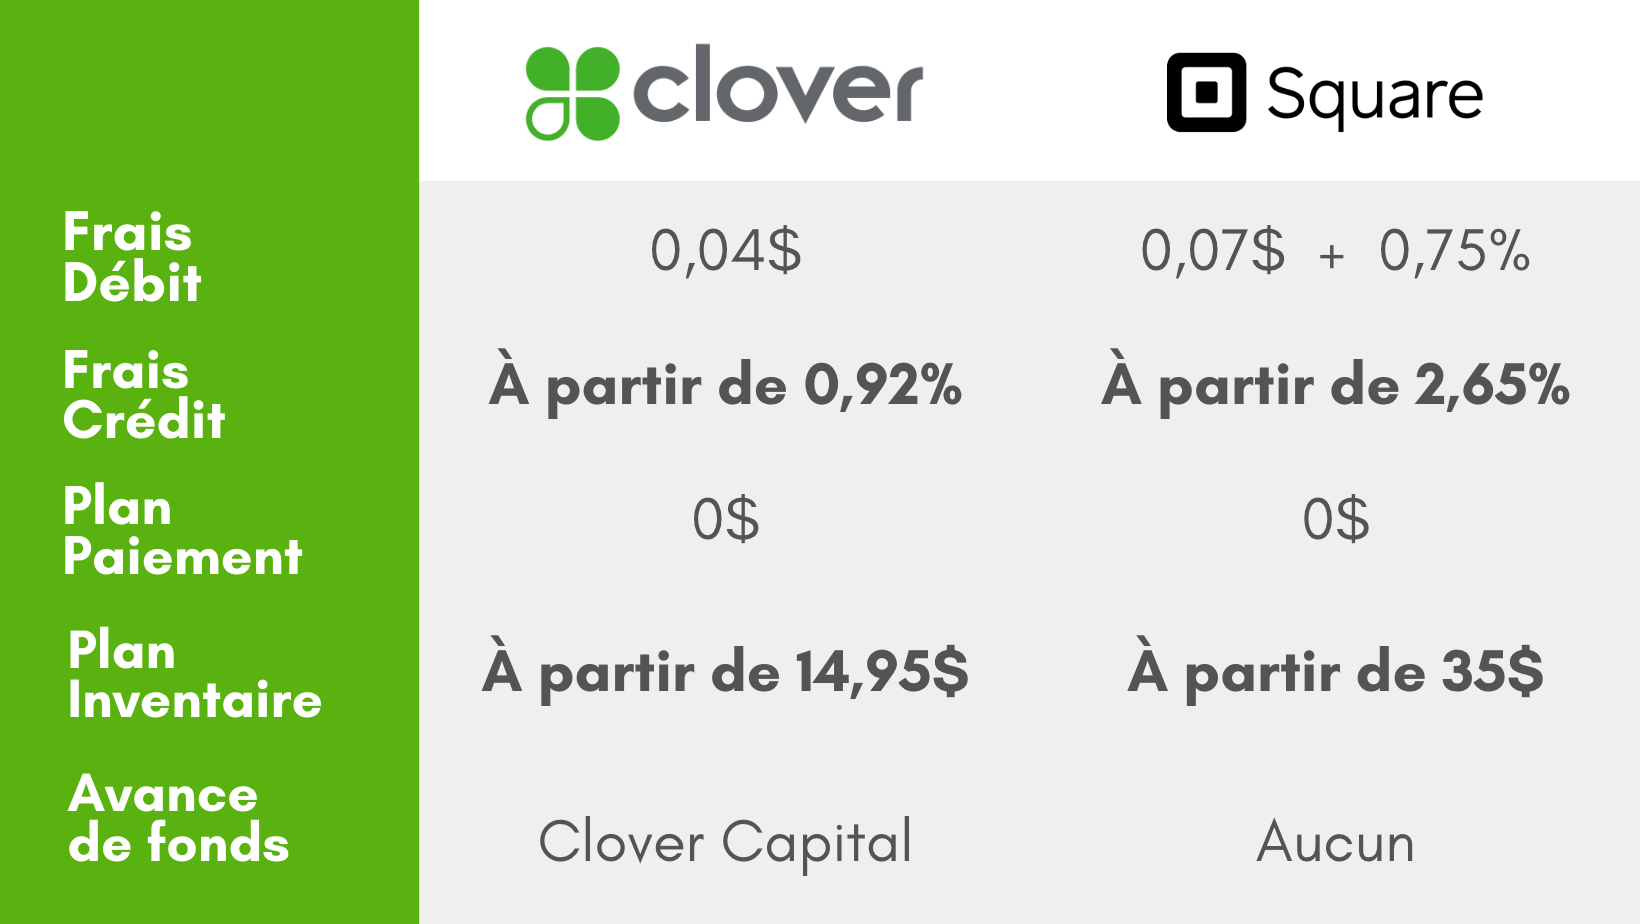 clover vs square, Frais Square, Augmentation square